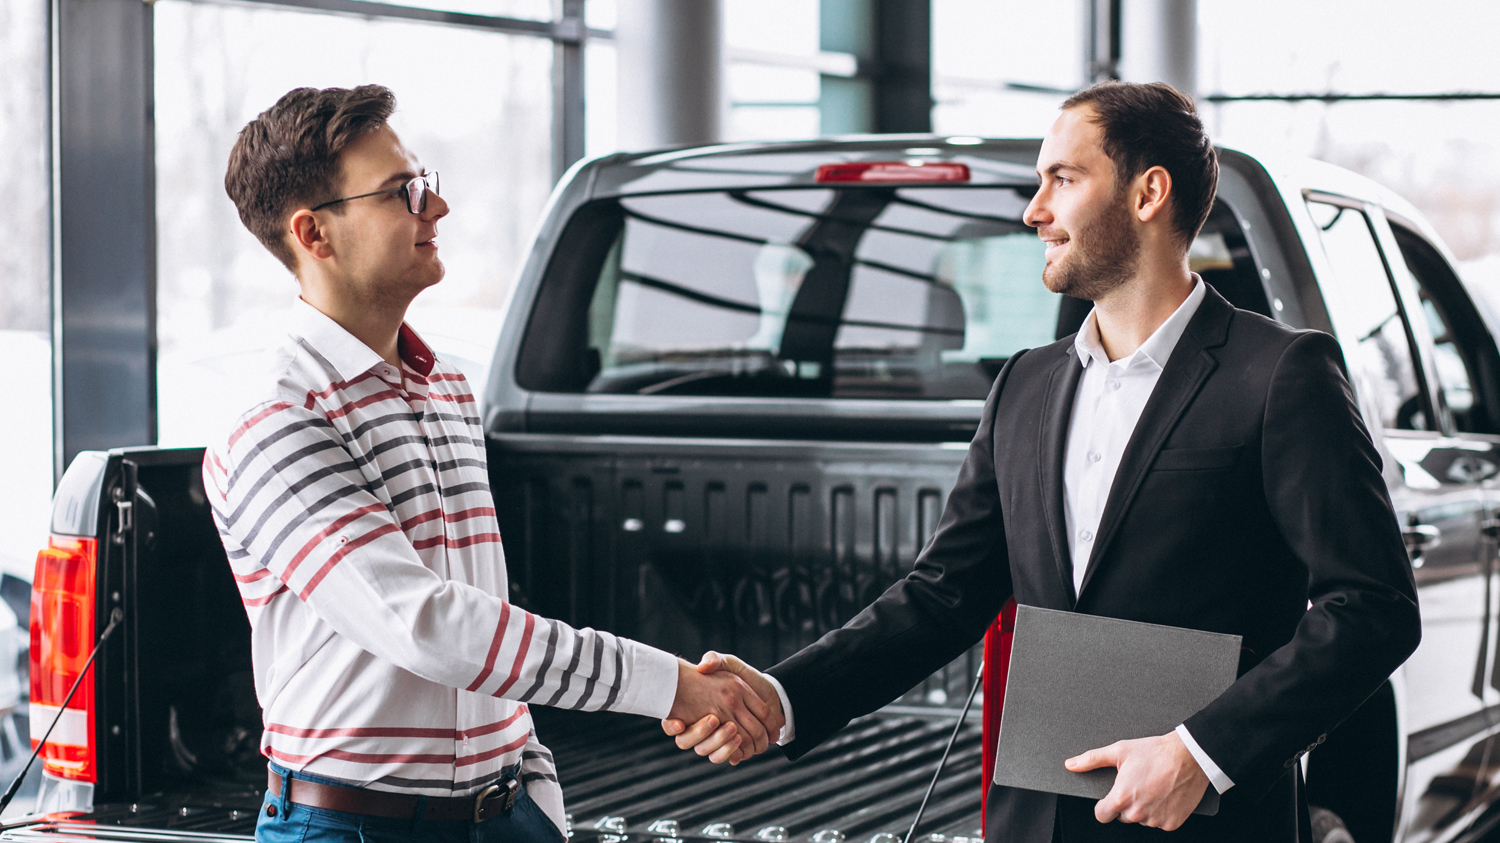 Venda consignada conheça as vantagens na hora de vender seu carro